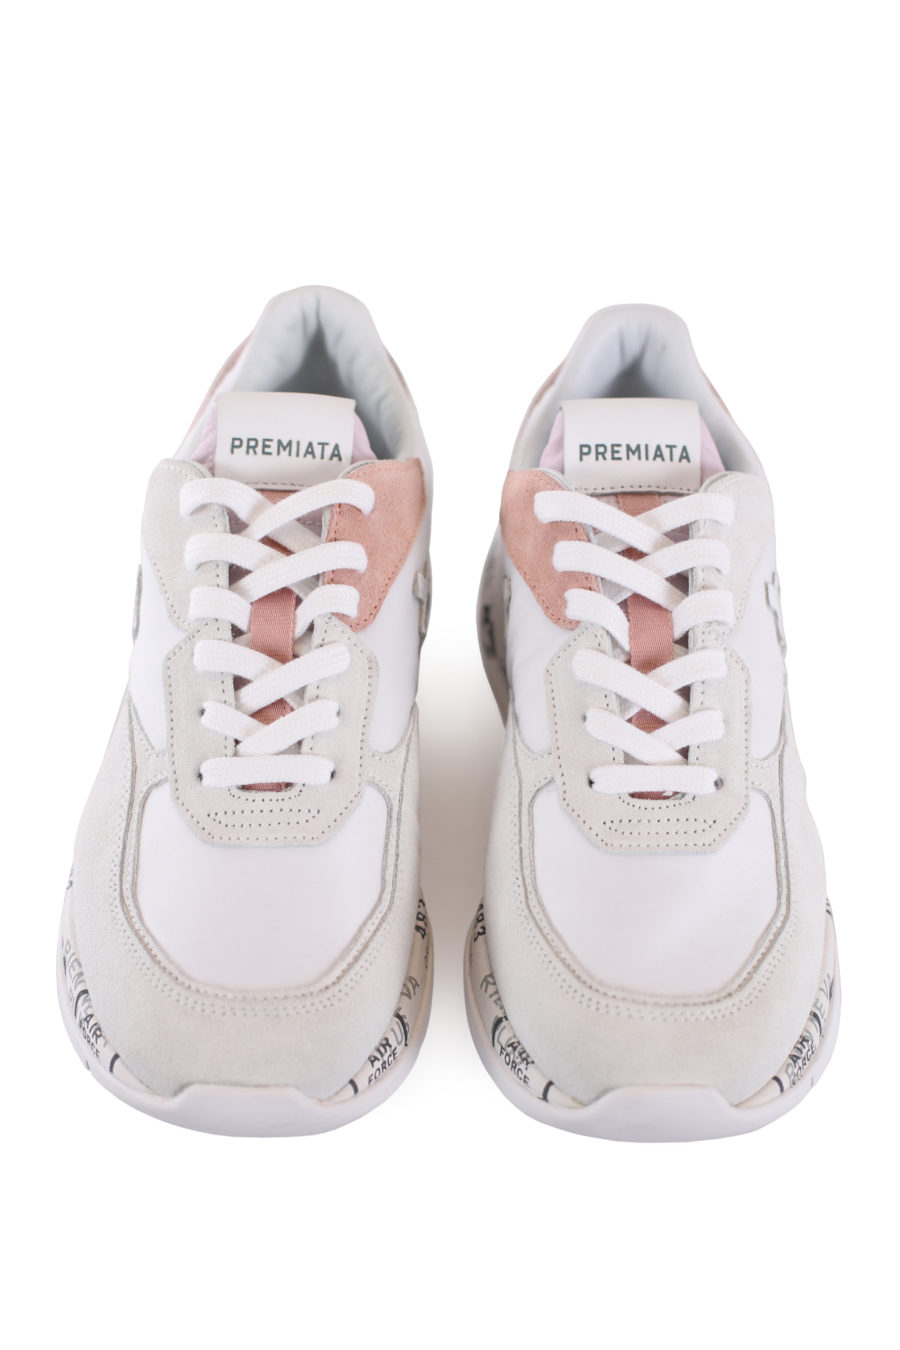 Zapatillas blancas con detalles rosa "Scarlett" - IMG 8616